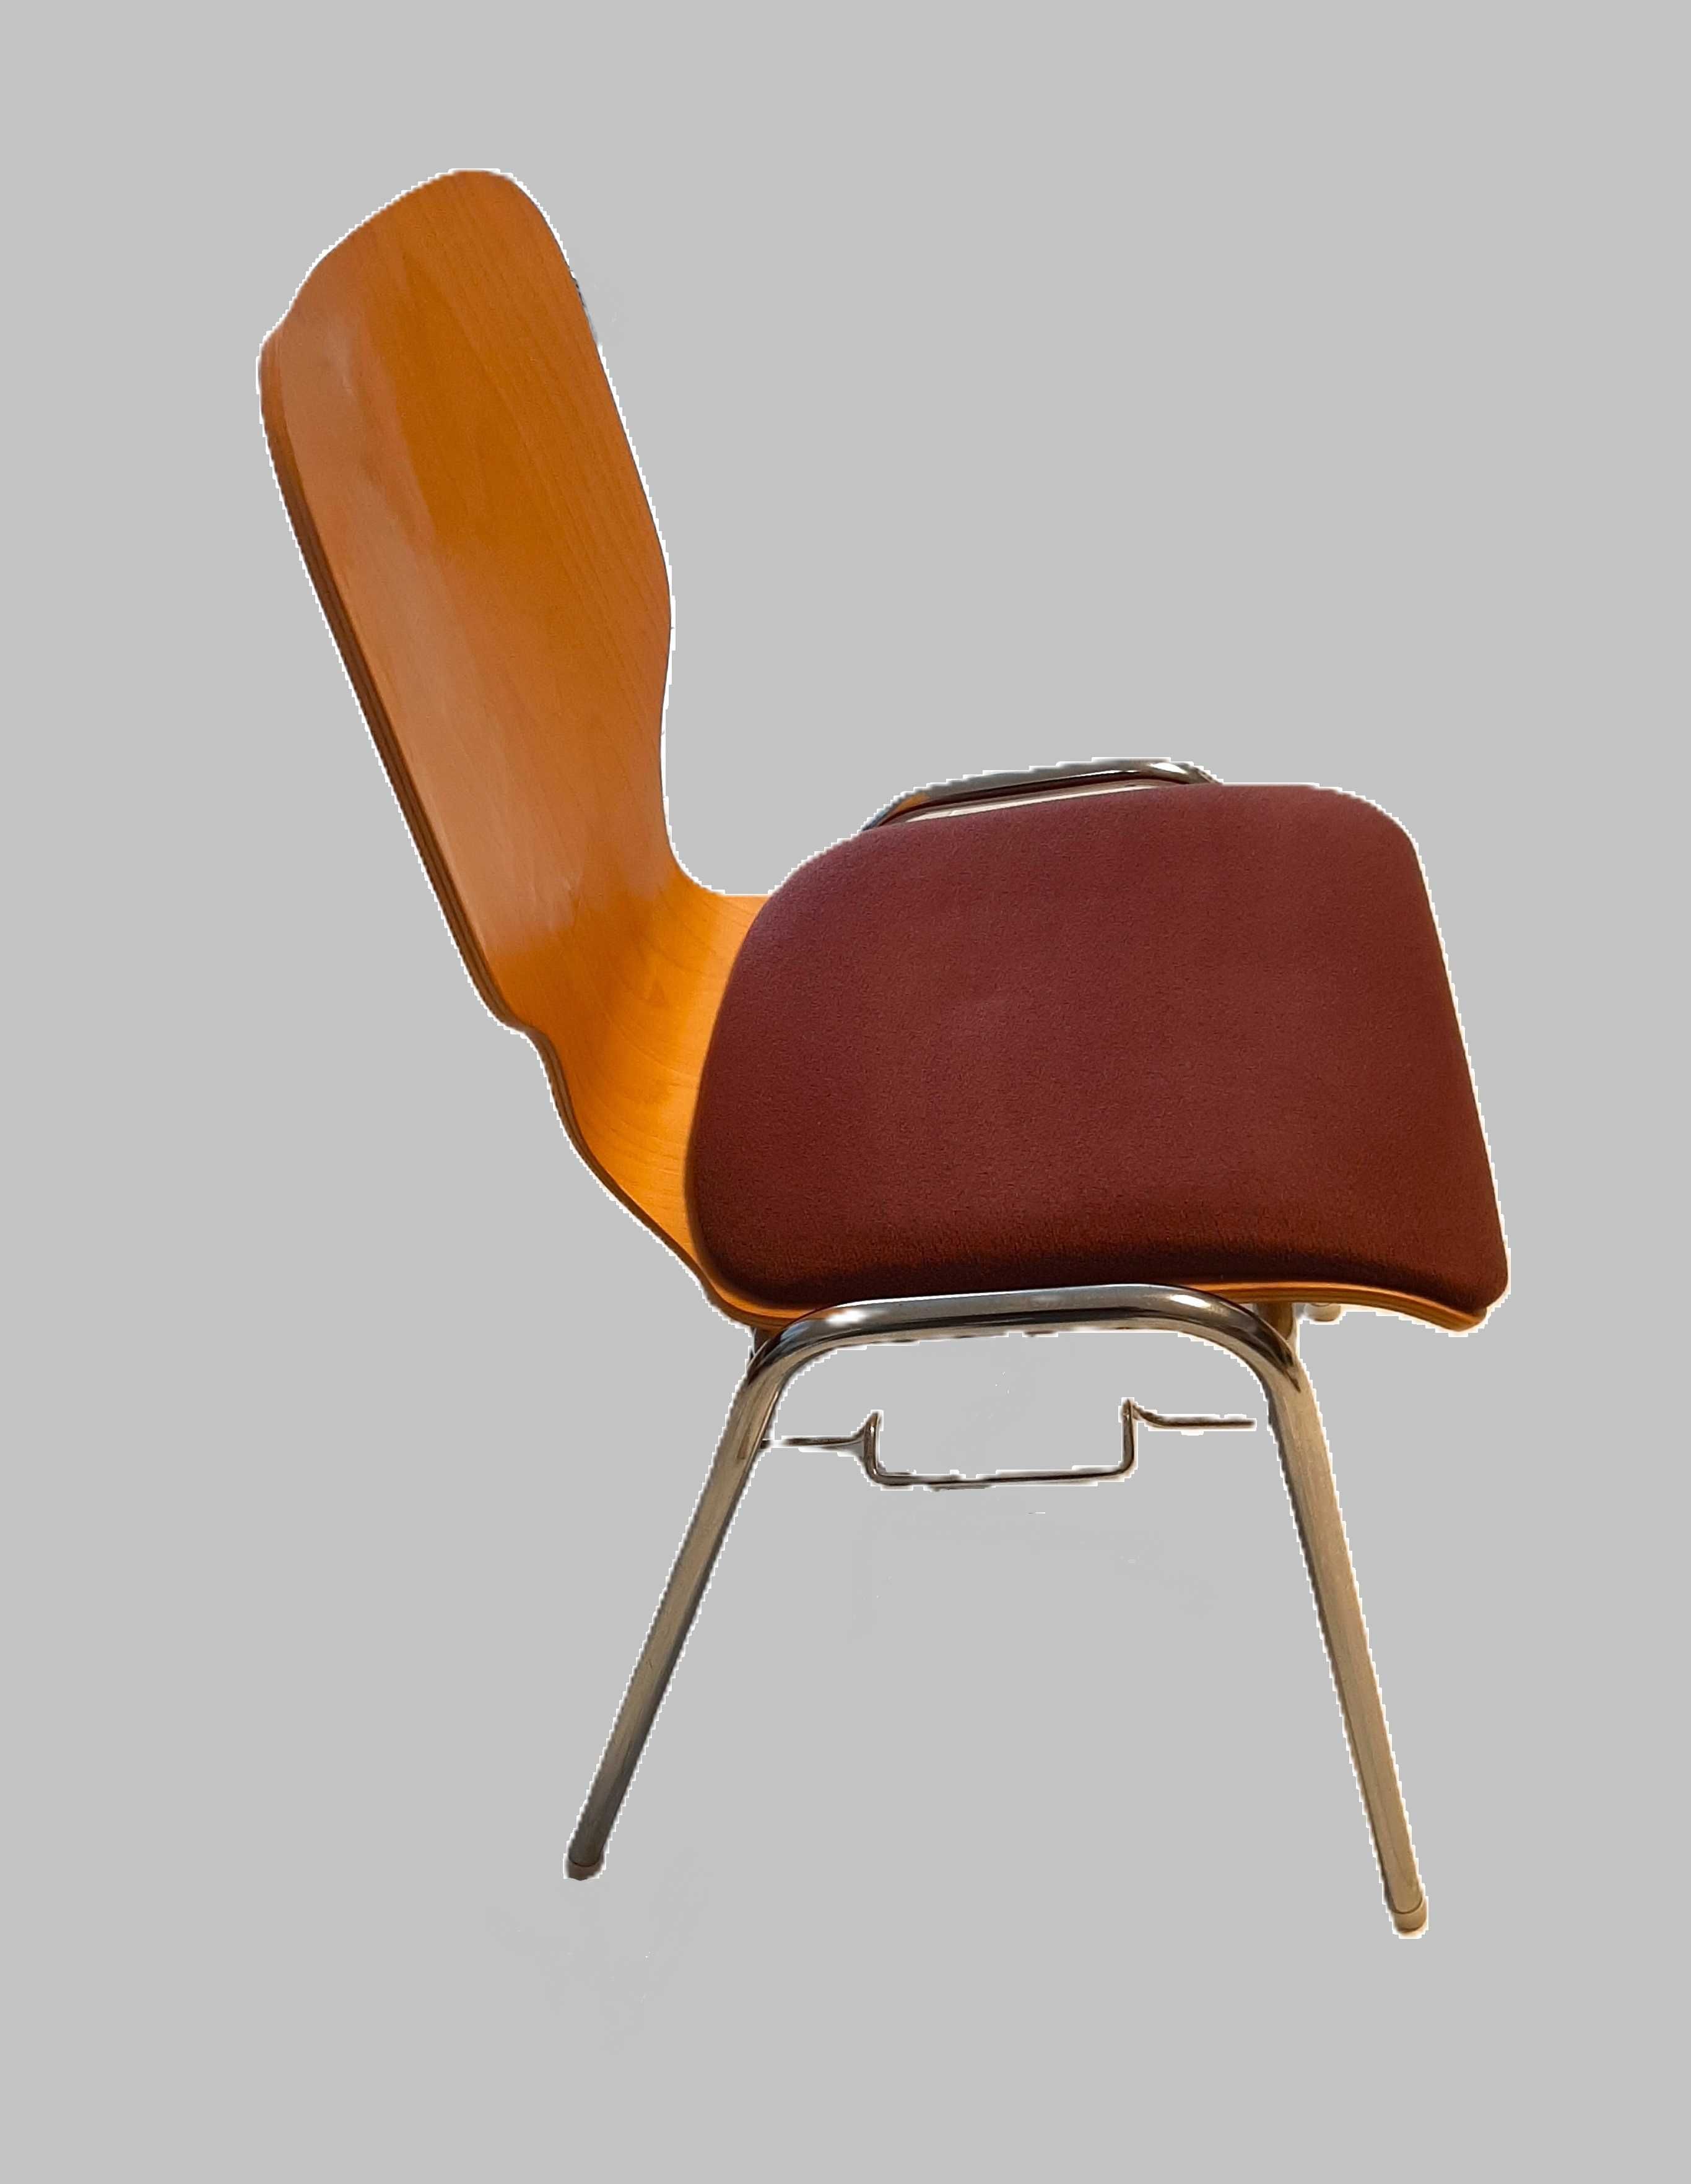 8 cadeiras com distinto Design